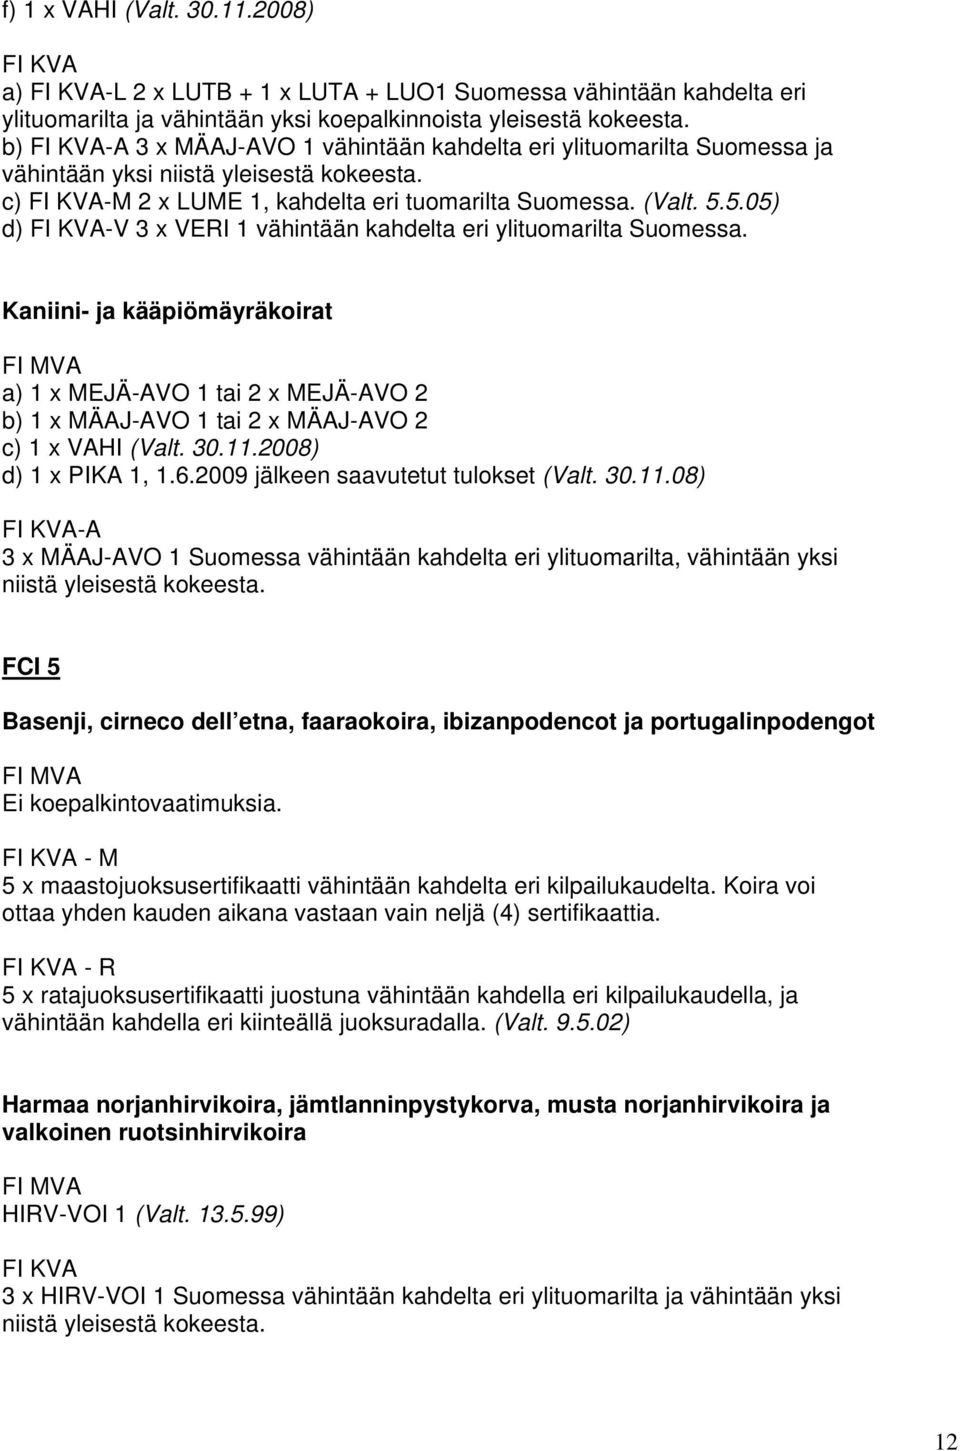 5.05) d) -V 3 x VERI 1 vähintään kahdelta eri ylituomarilta Suomessa. Kaniini- ja kääpiömäyräkoirat a) 1 x MEJÄ-AVO 1 tai 2 x MEJÄ-AVO 2 b) 1 x MÄAJ-AVO 1 tai 2 x MÄAJ-AVO 2 c) 1 x VAHI (Valt. 30.11.